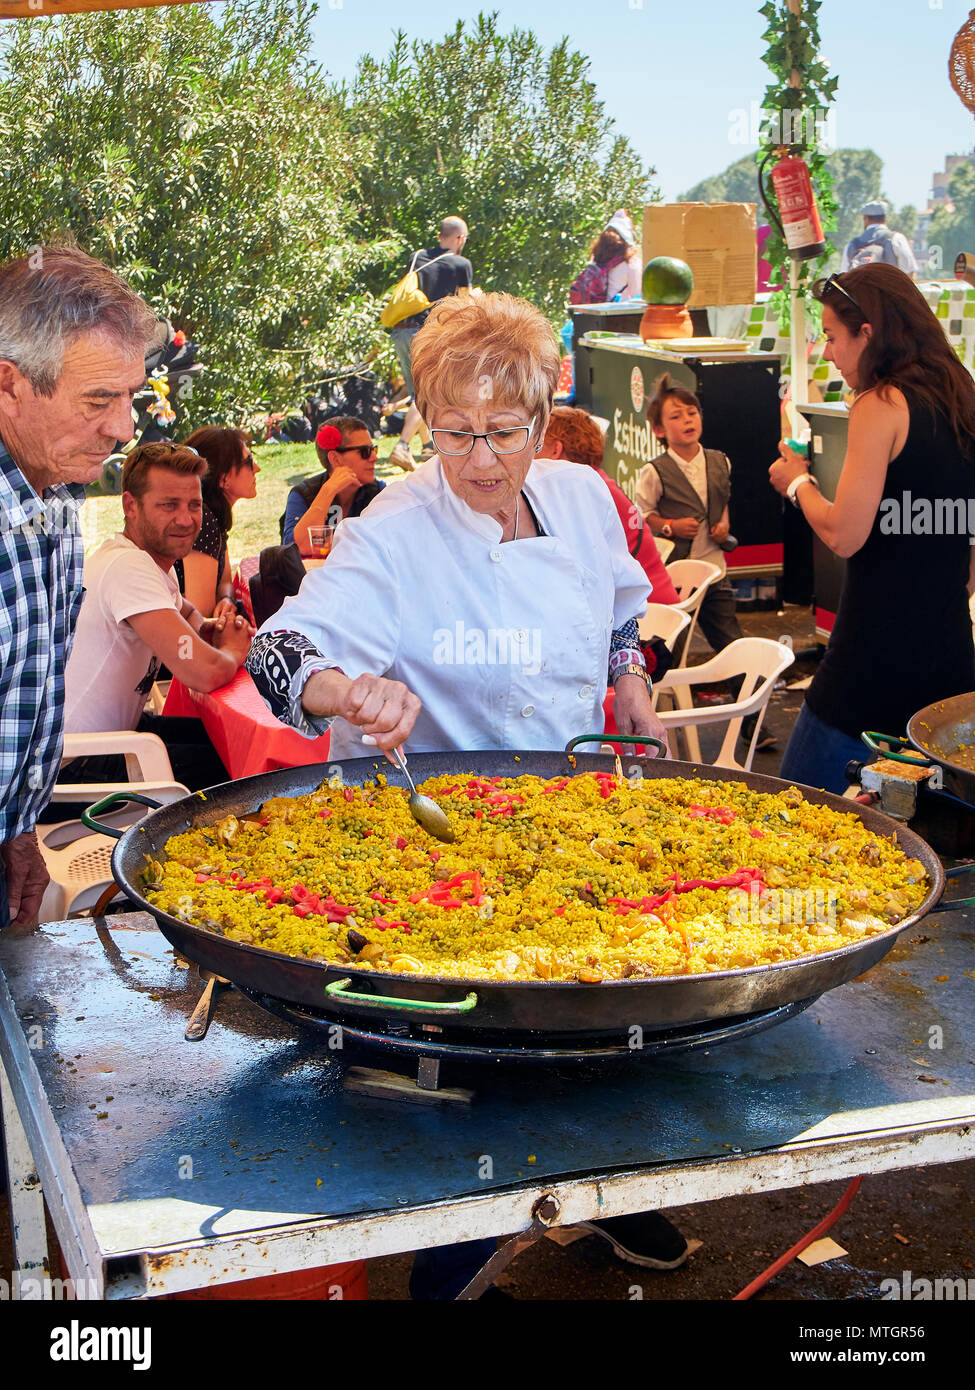 Madrid, Espagne - 15 mai 2018. La Paella espagnole en cours. Une dégustation cook leur Paella lors d'une foire gastronomique. Banque D'Images